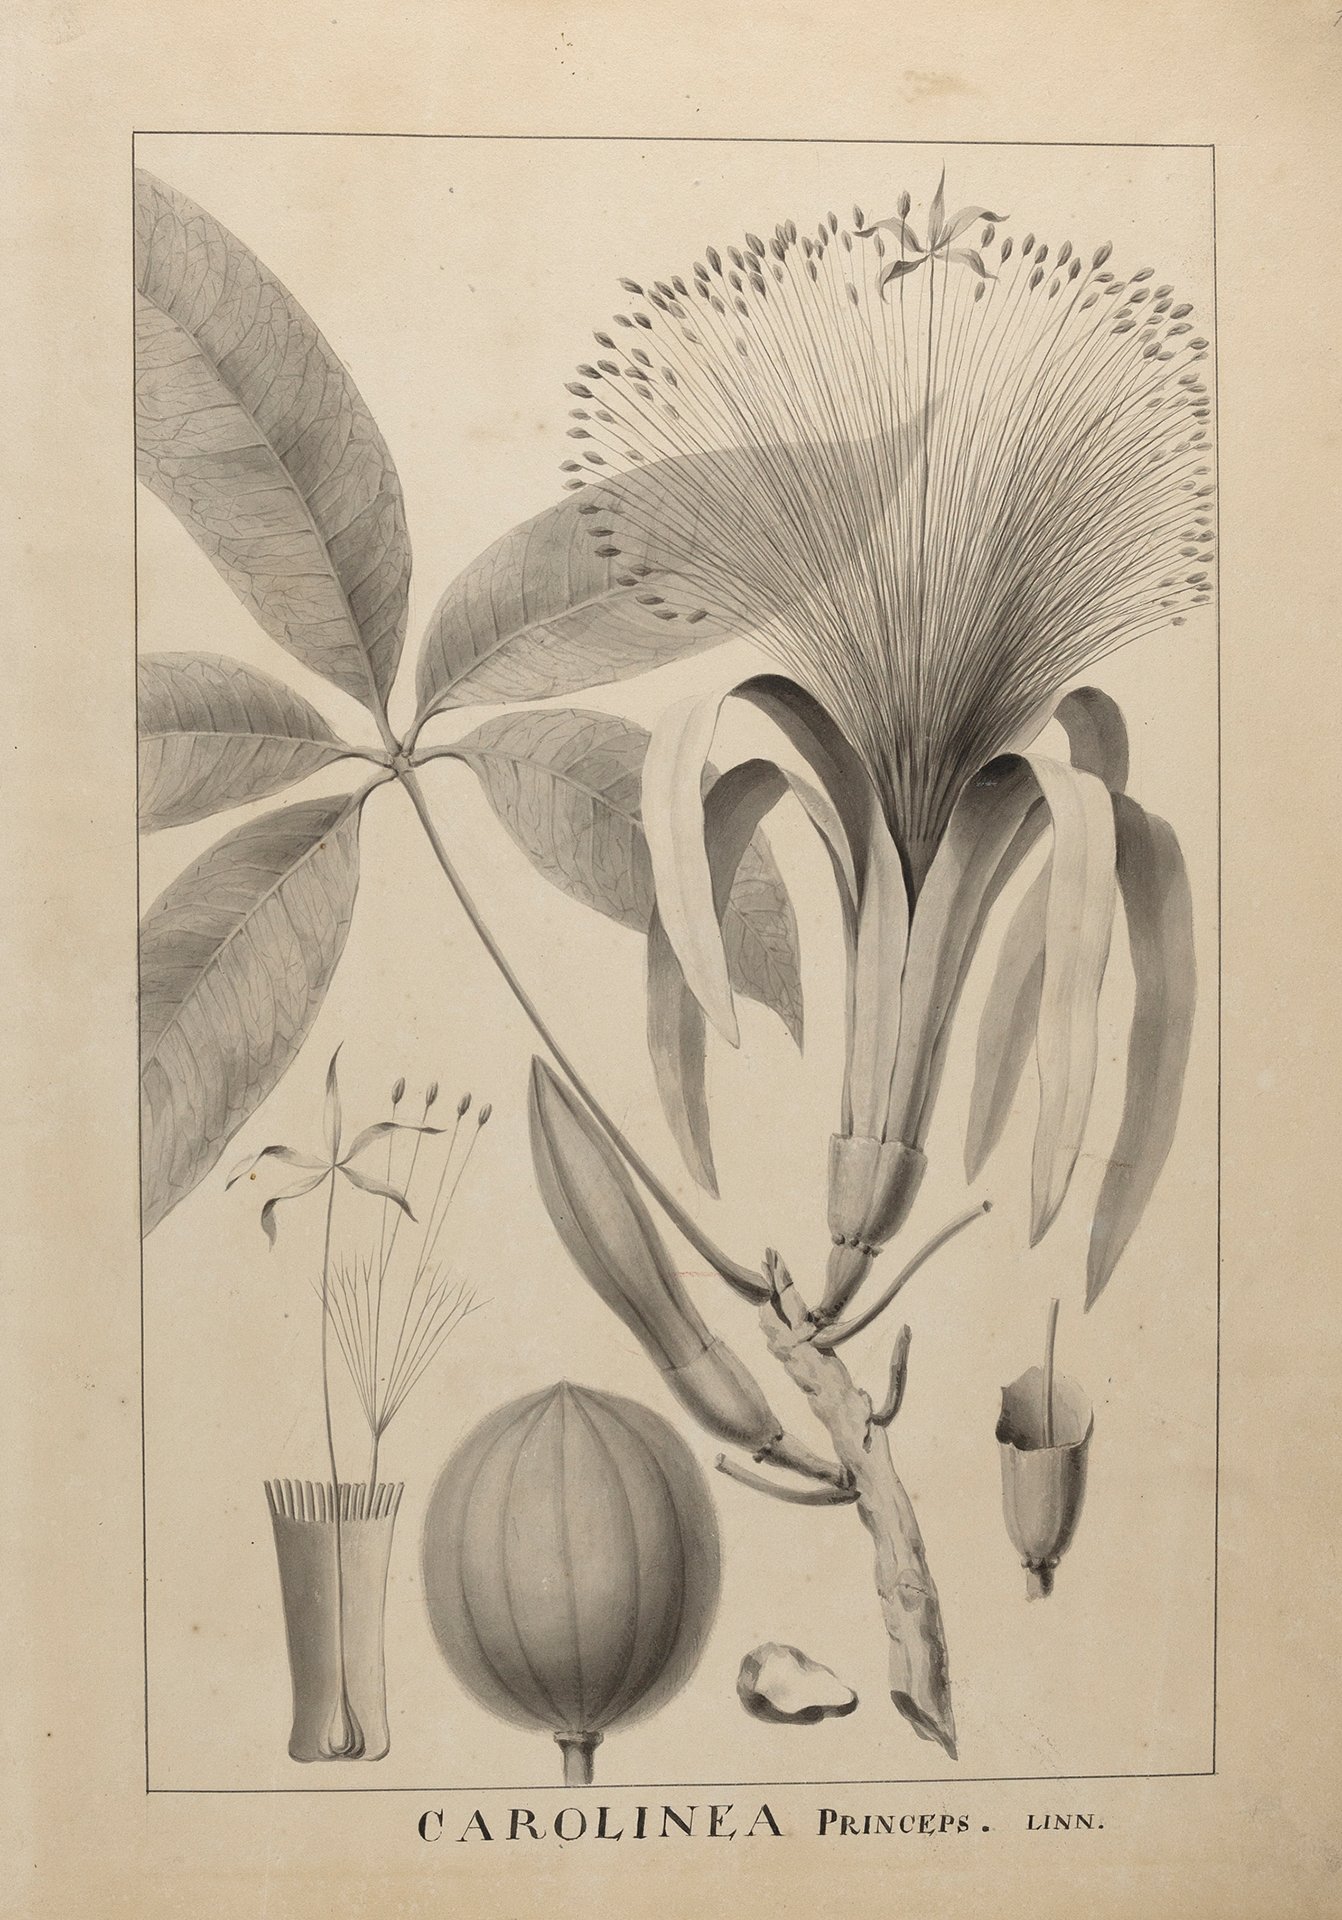 Abbildung der Pflanzenstudie "Carolinea Princeps" aus dem Jahr 1775, die in der Ausstellung "Die Meister-Sammlerin" vom 30. Mai bis 6. September 2015 in der Staatlichen Kunsthalle Karlsruhe zu sehen war.